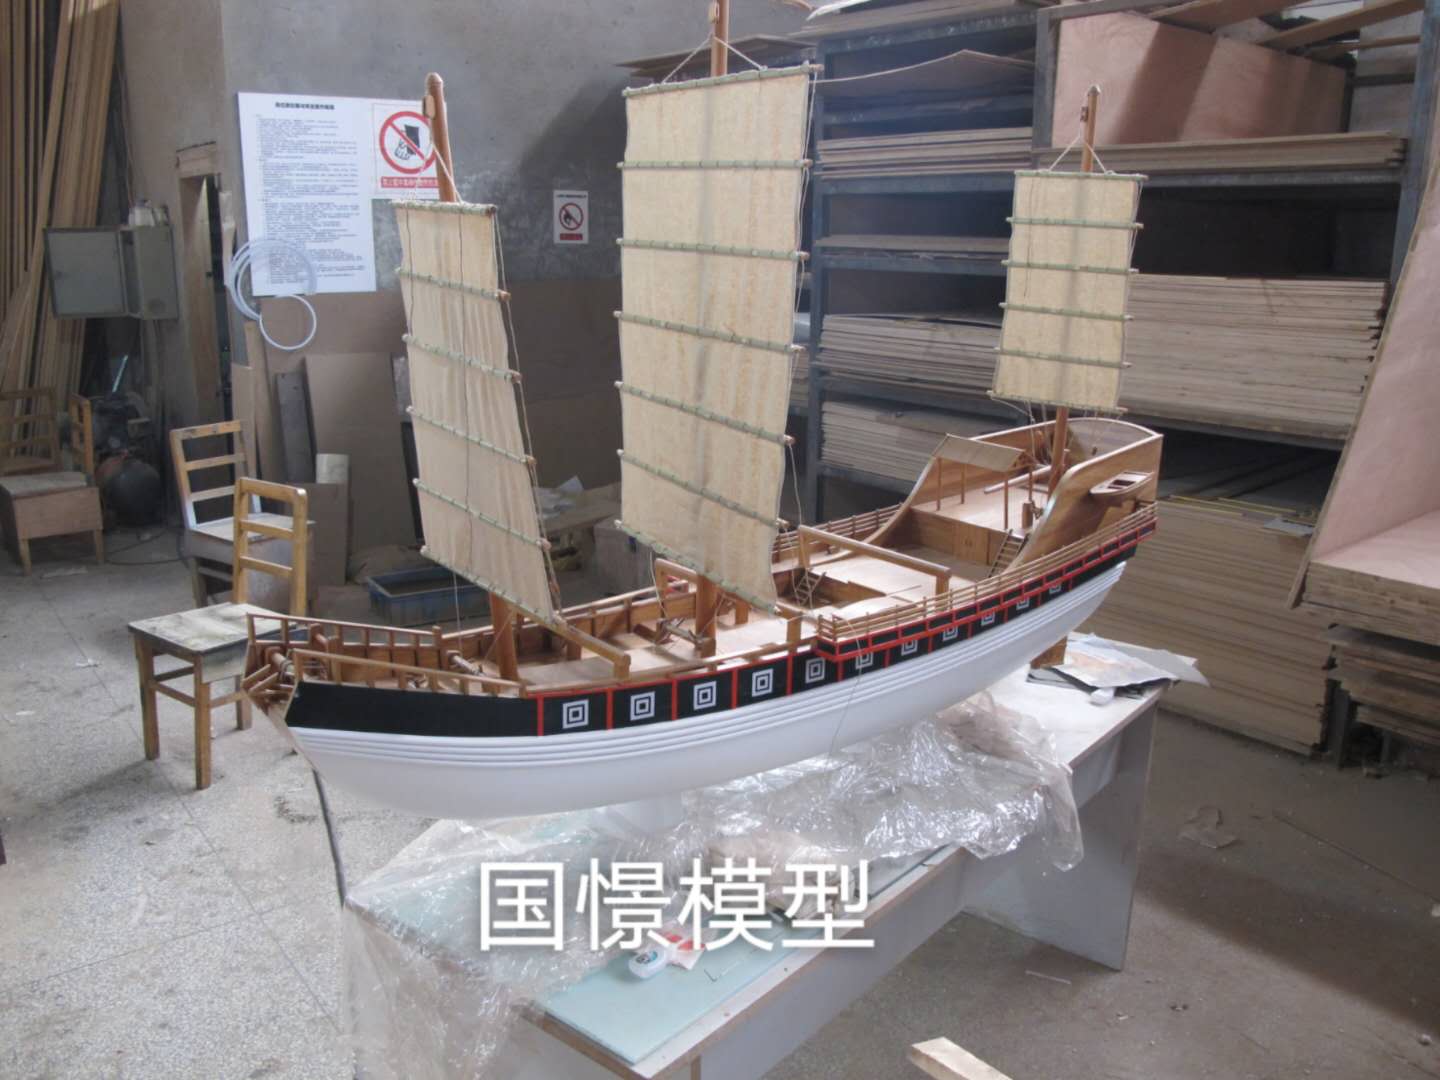 炎陵县船舶模型